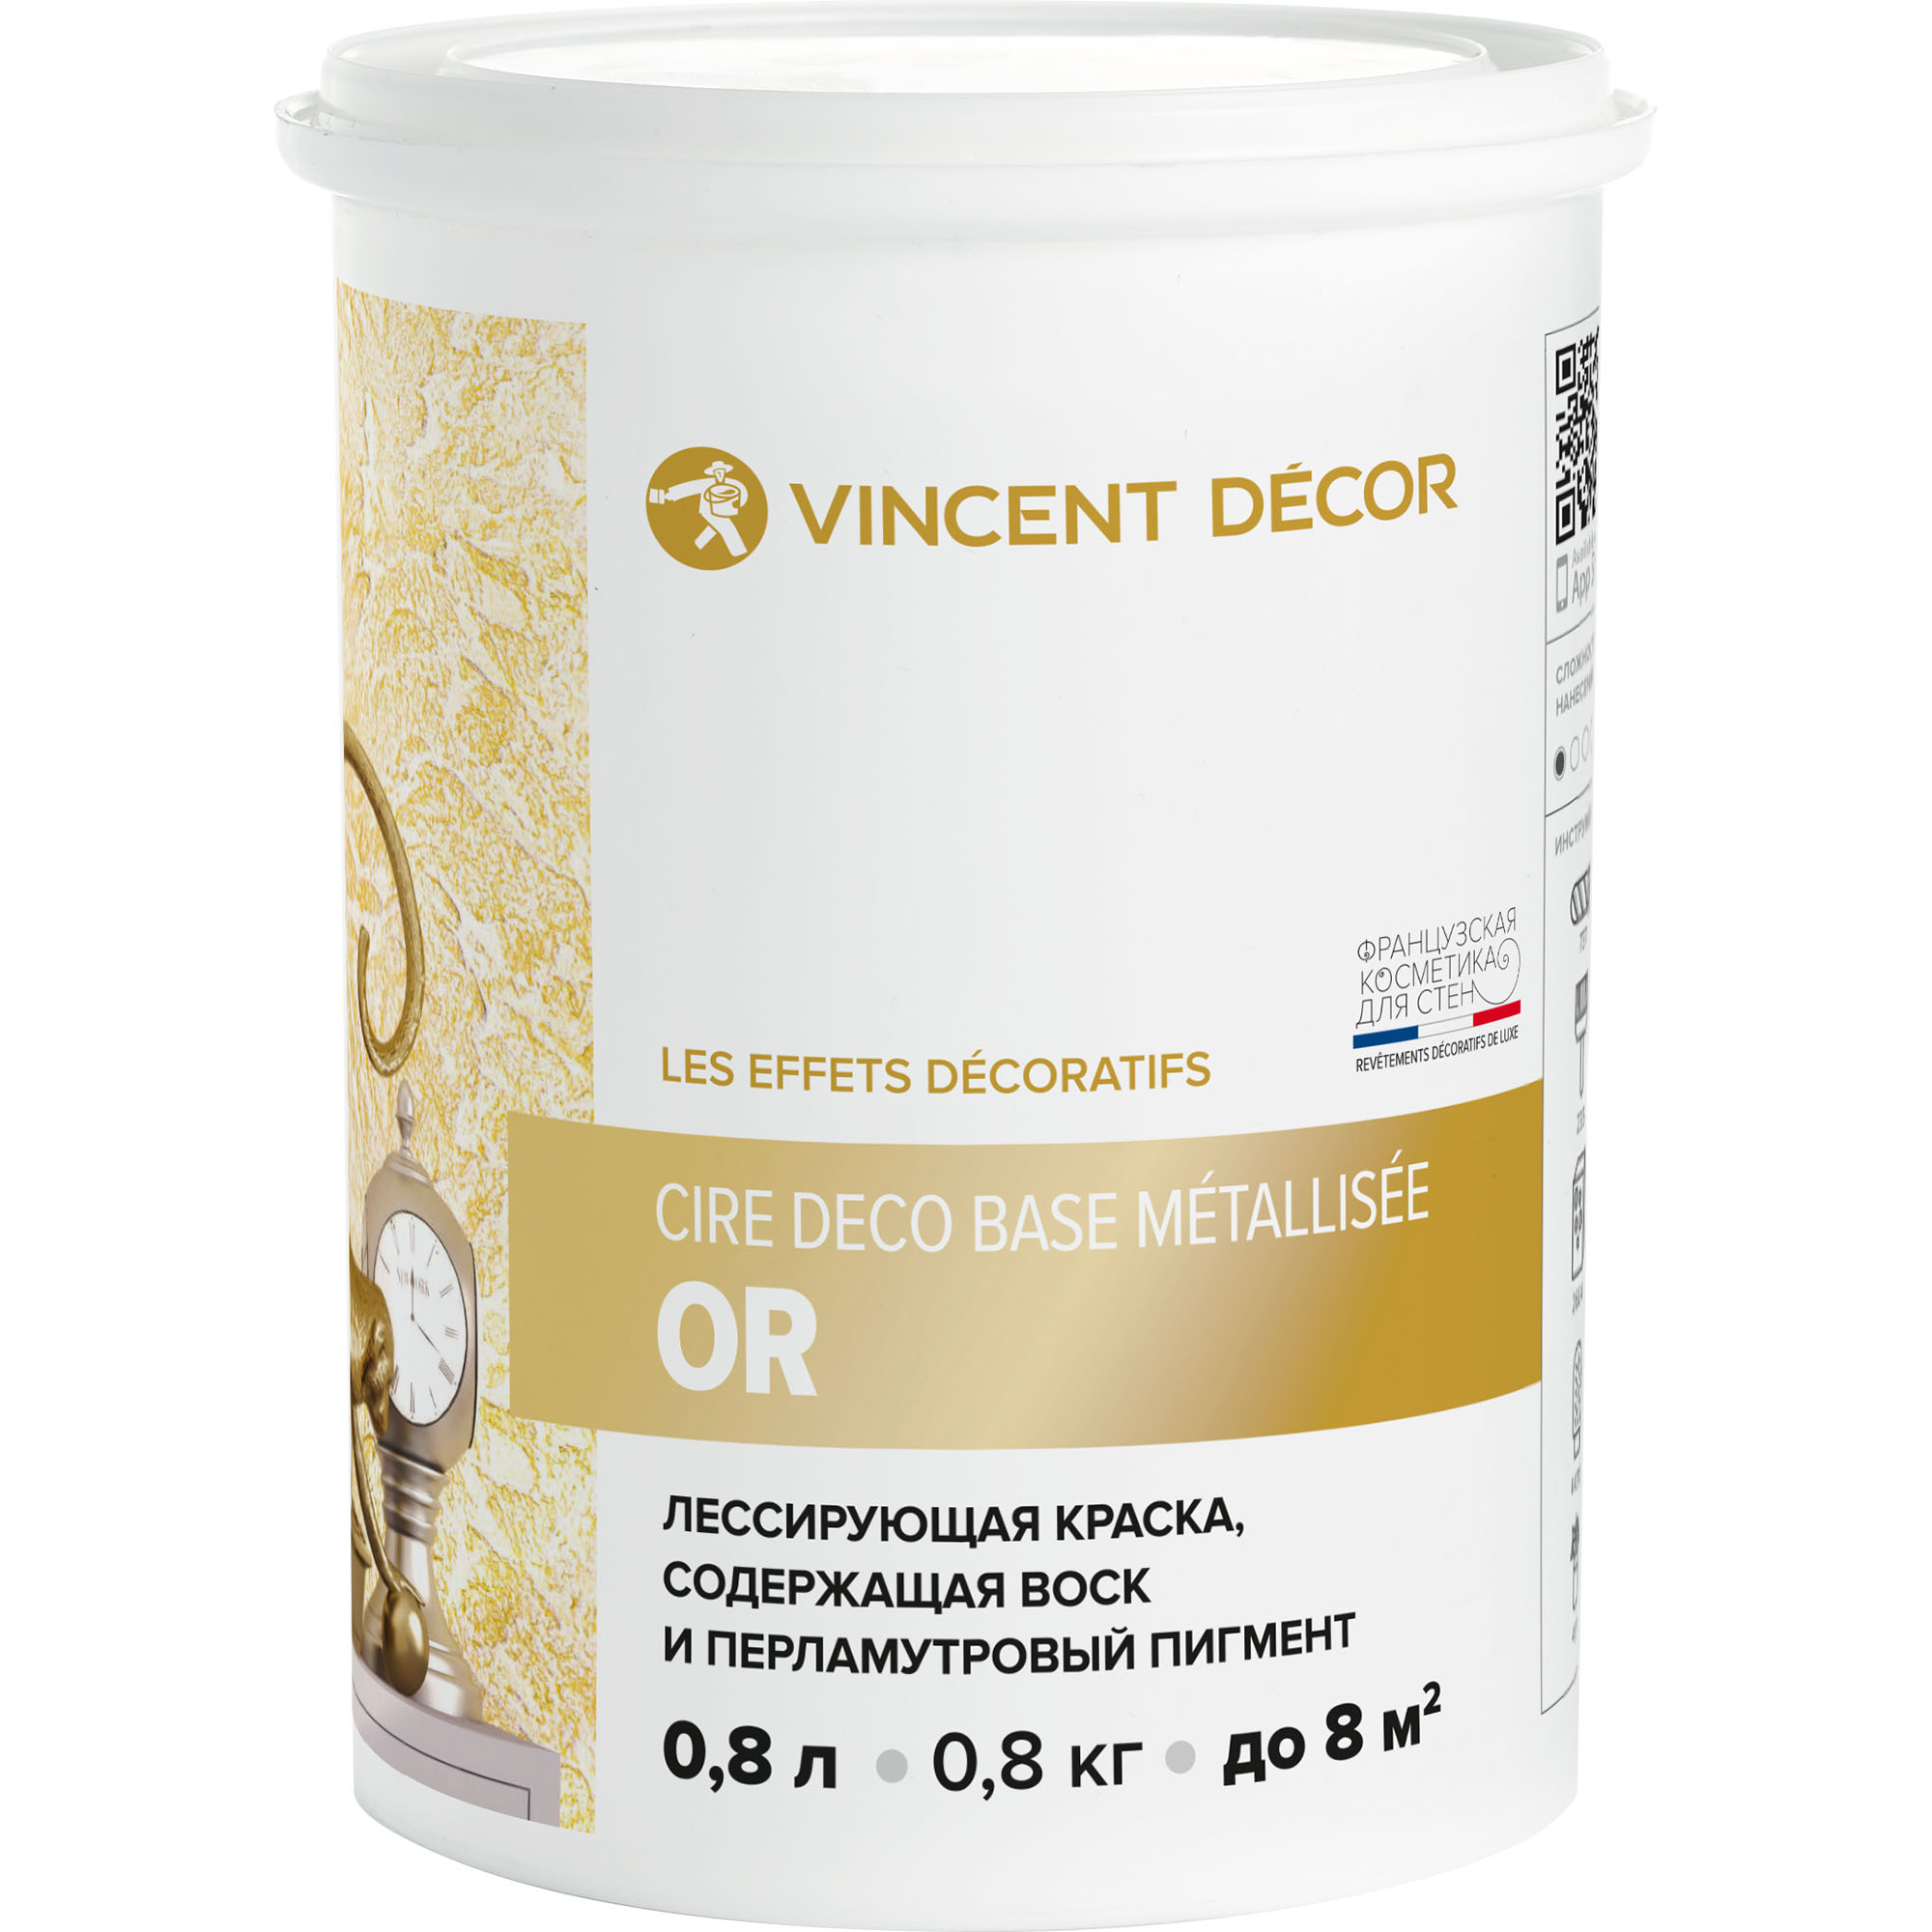 Краска лессирующая для декоративных покрытий Vincent Decor Cire deco base Metallisee Or золото 0,8 л краска лессирующая vincent decor cire deco с воском для декоративных покрытий 2 5 л